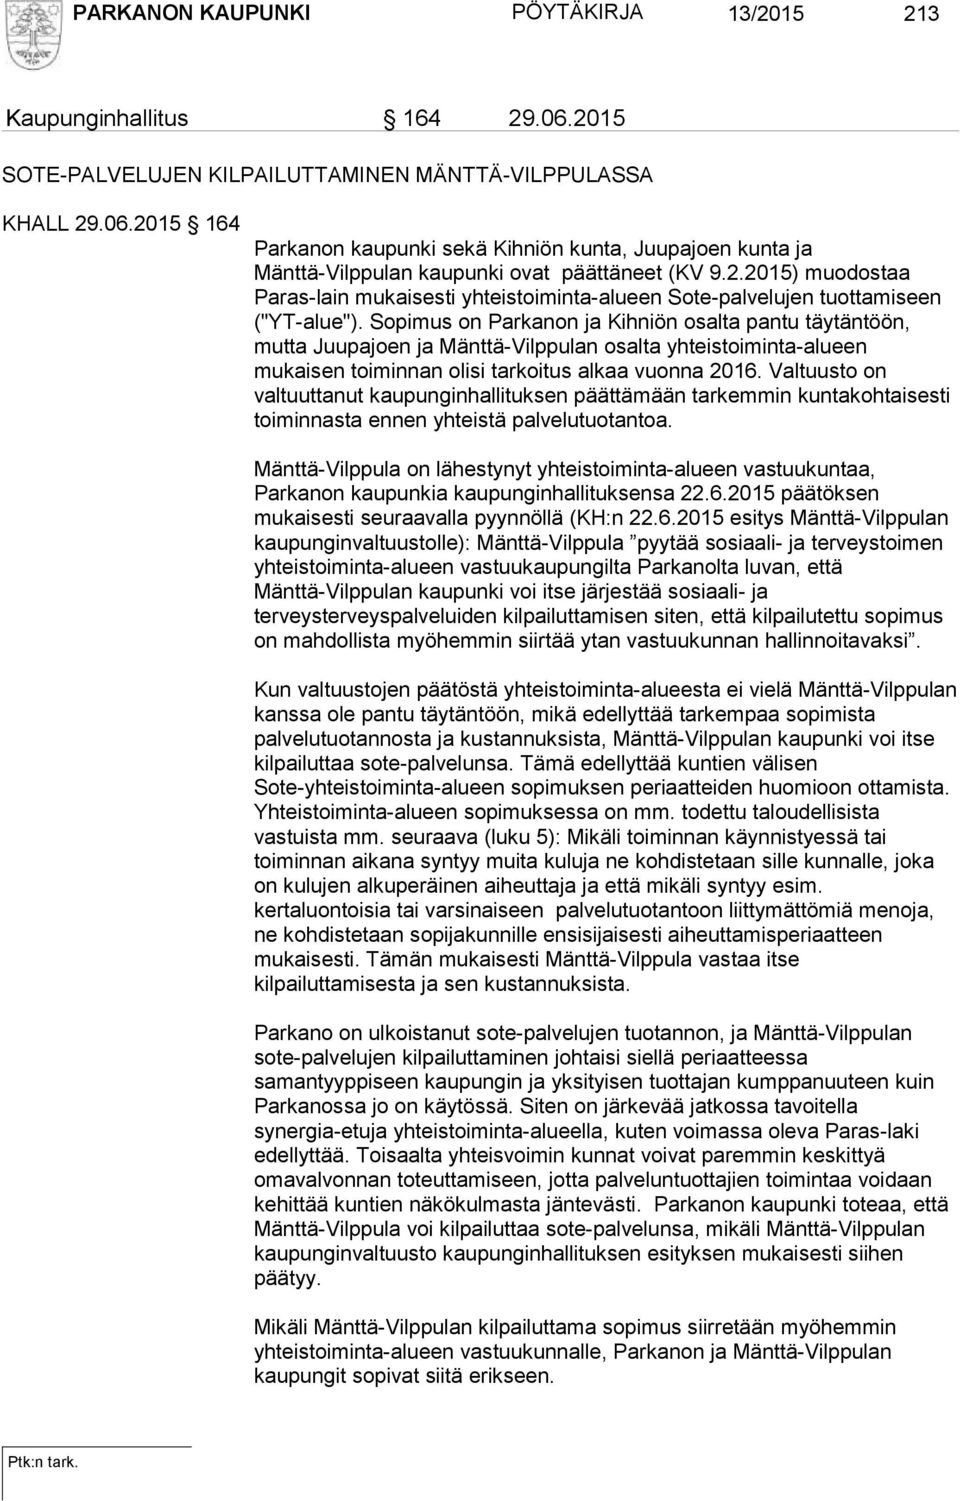 Sopimus on Parkanon ja Kihniön osalta pantu täytäntöön, mutta Juupajoen ja Mänttä-Vilppulan osalta yhteistoiminta-alueen mukaisen toiminnan olisi tarkoitus alkaa vuonna 2016.